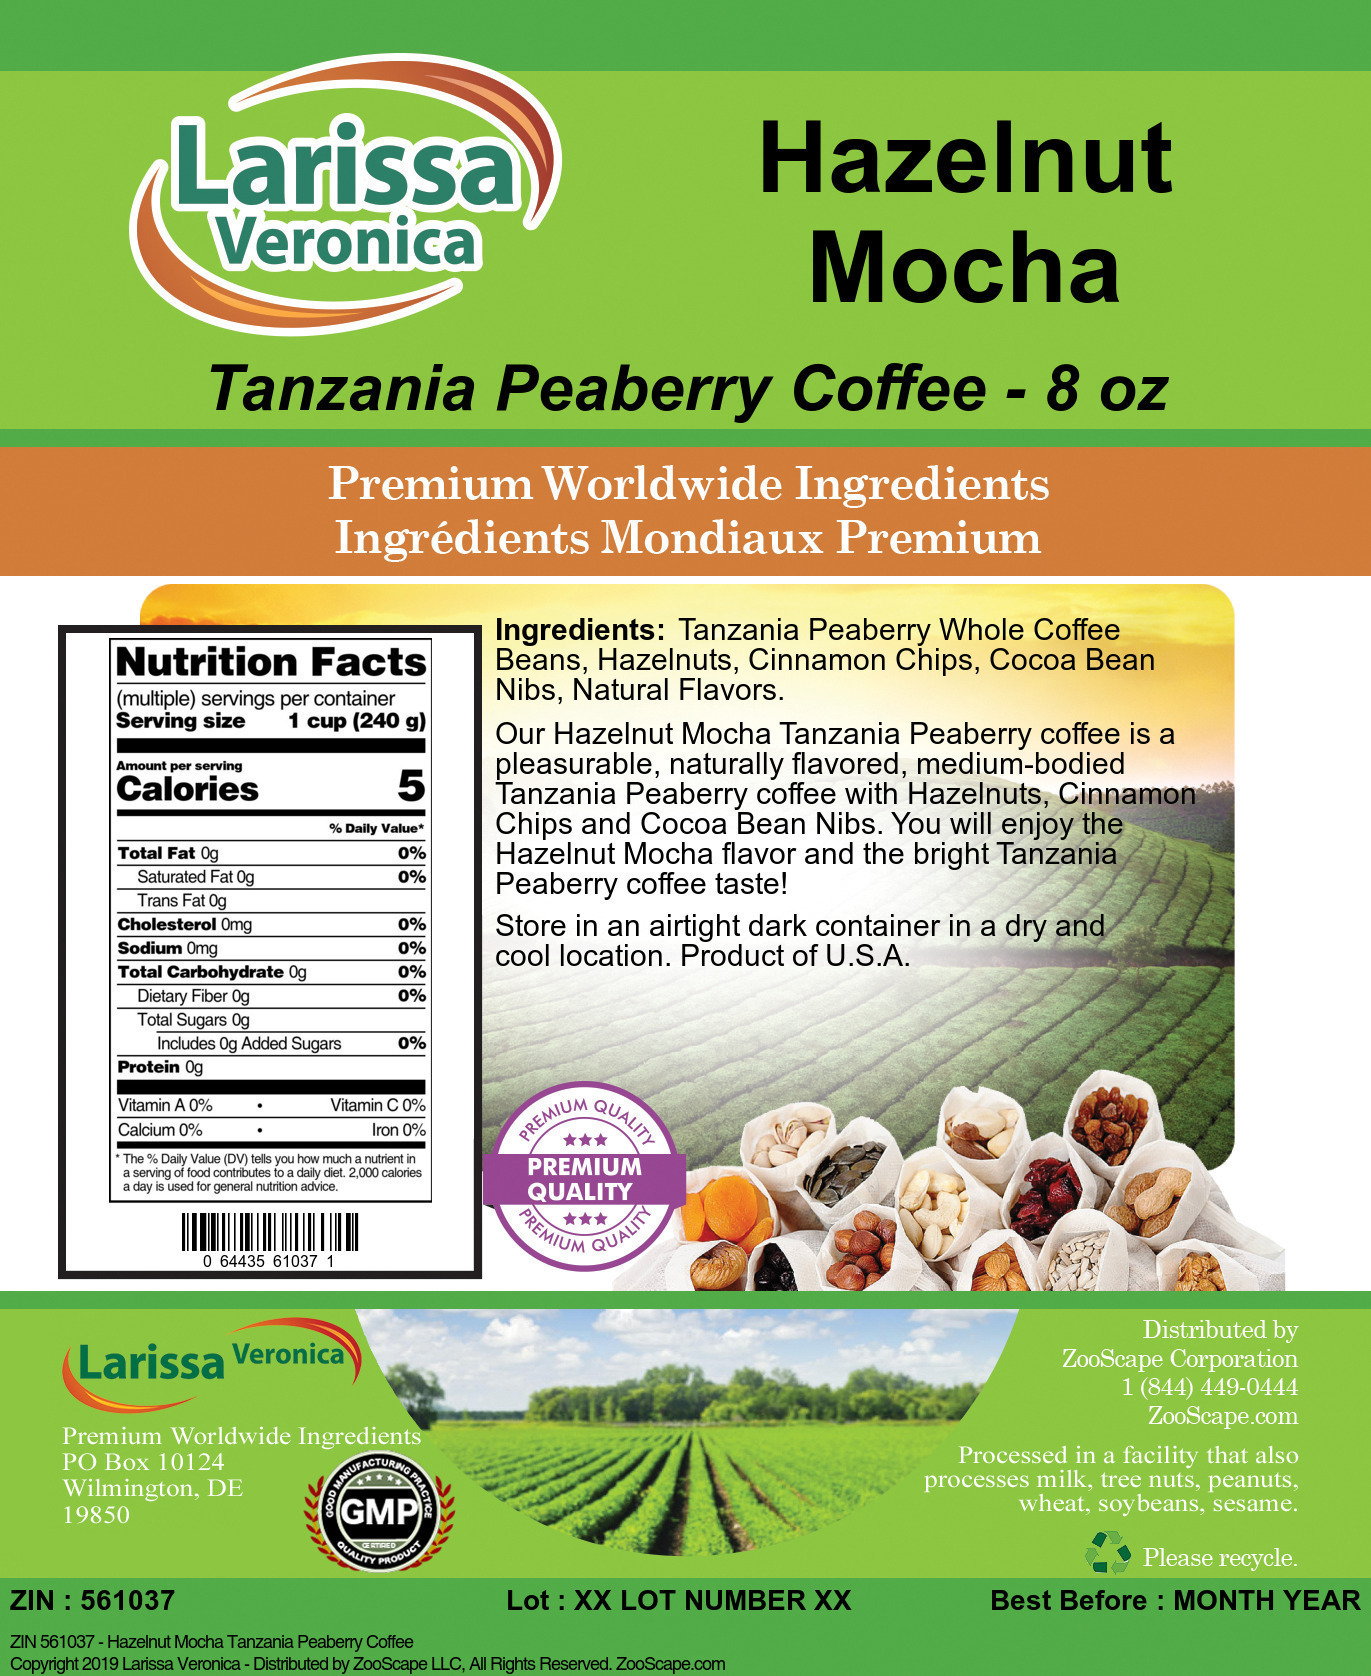 Hazelnut Mocha Tanzania Peaberry Coffee - Label